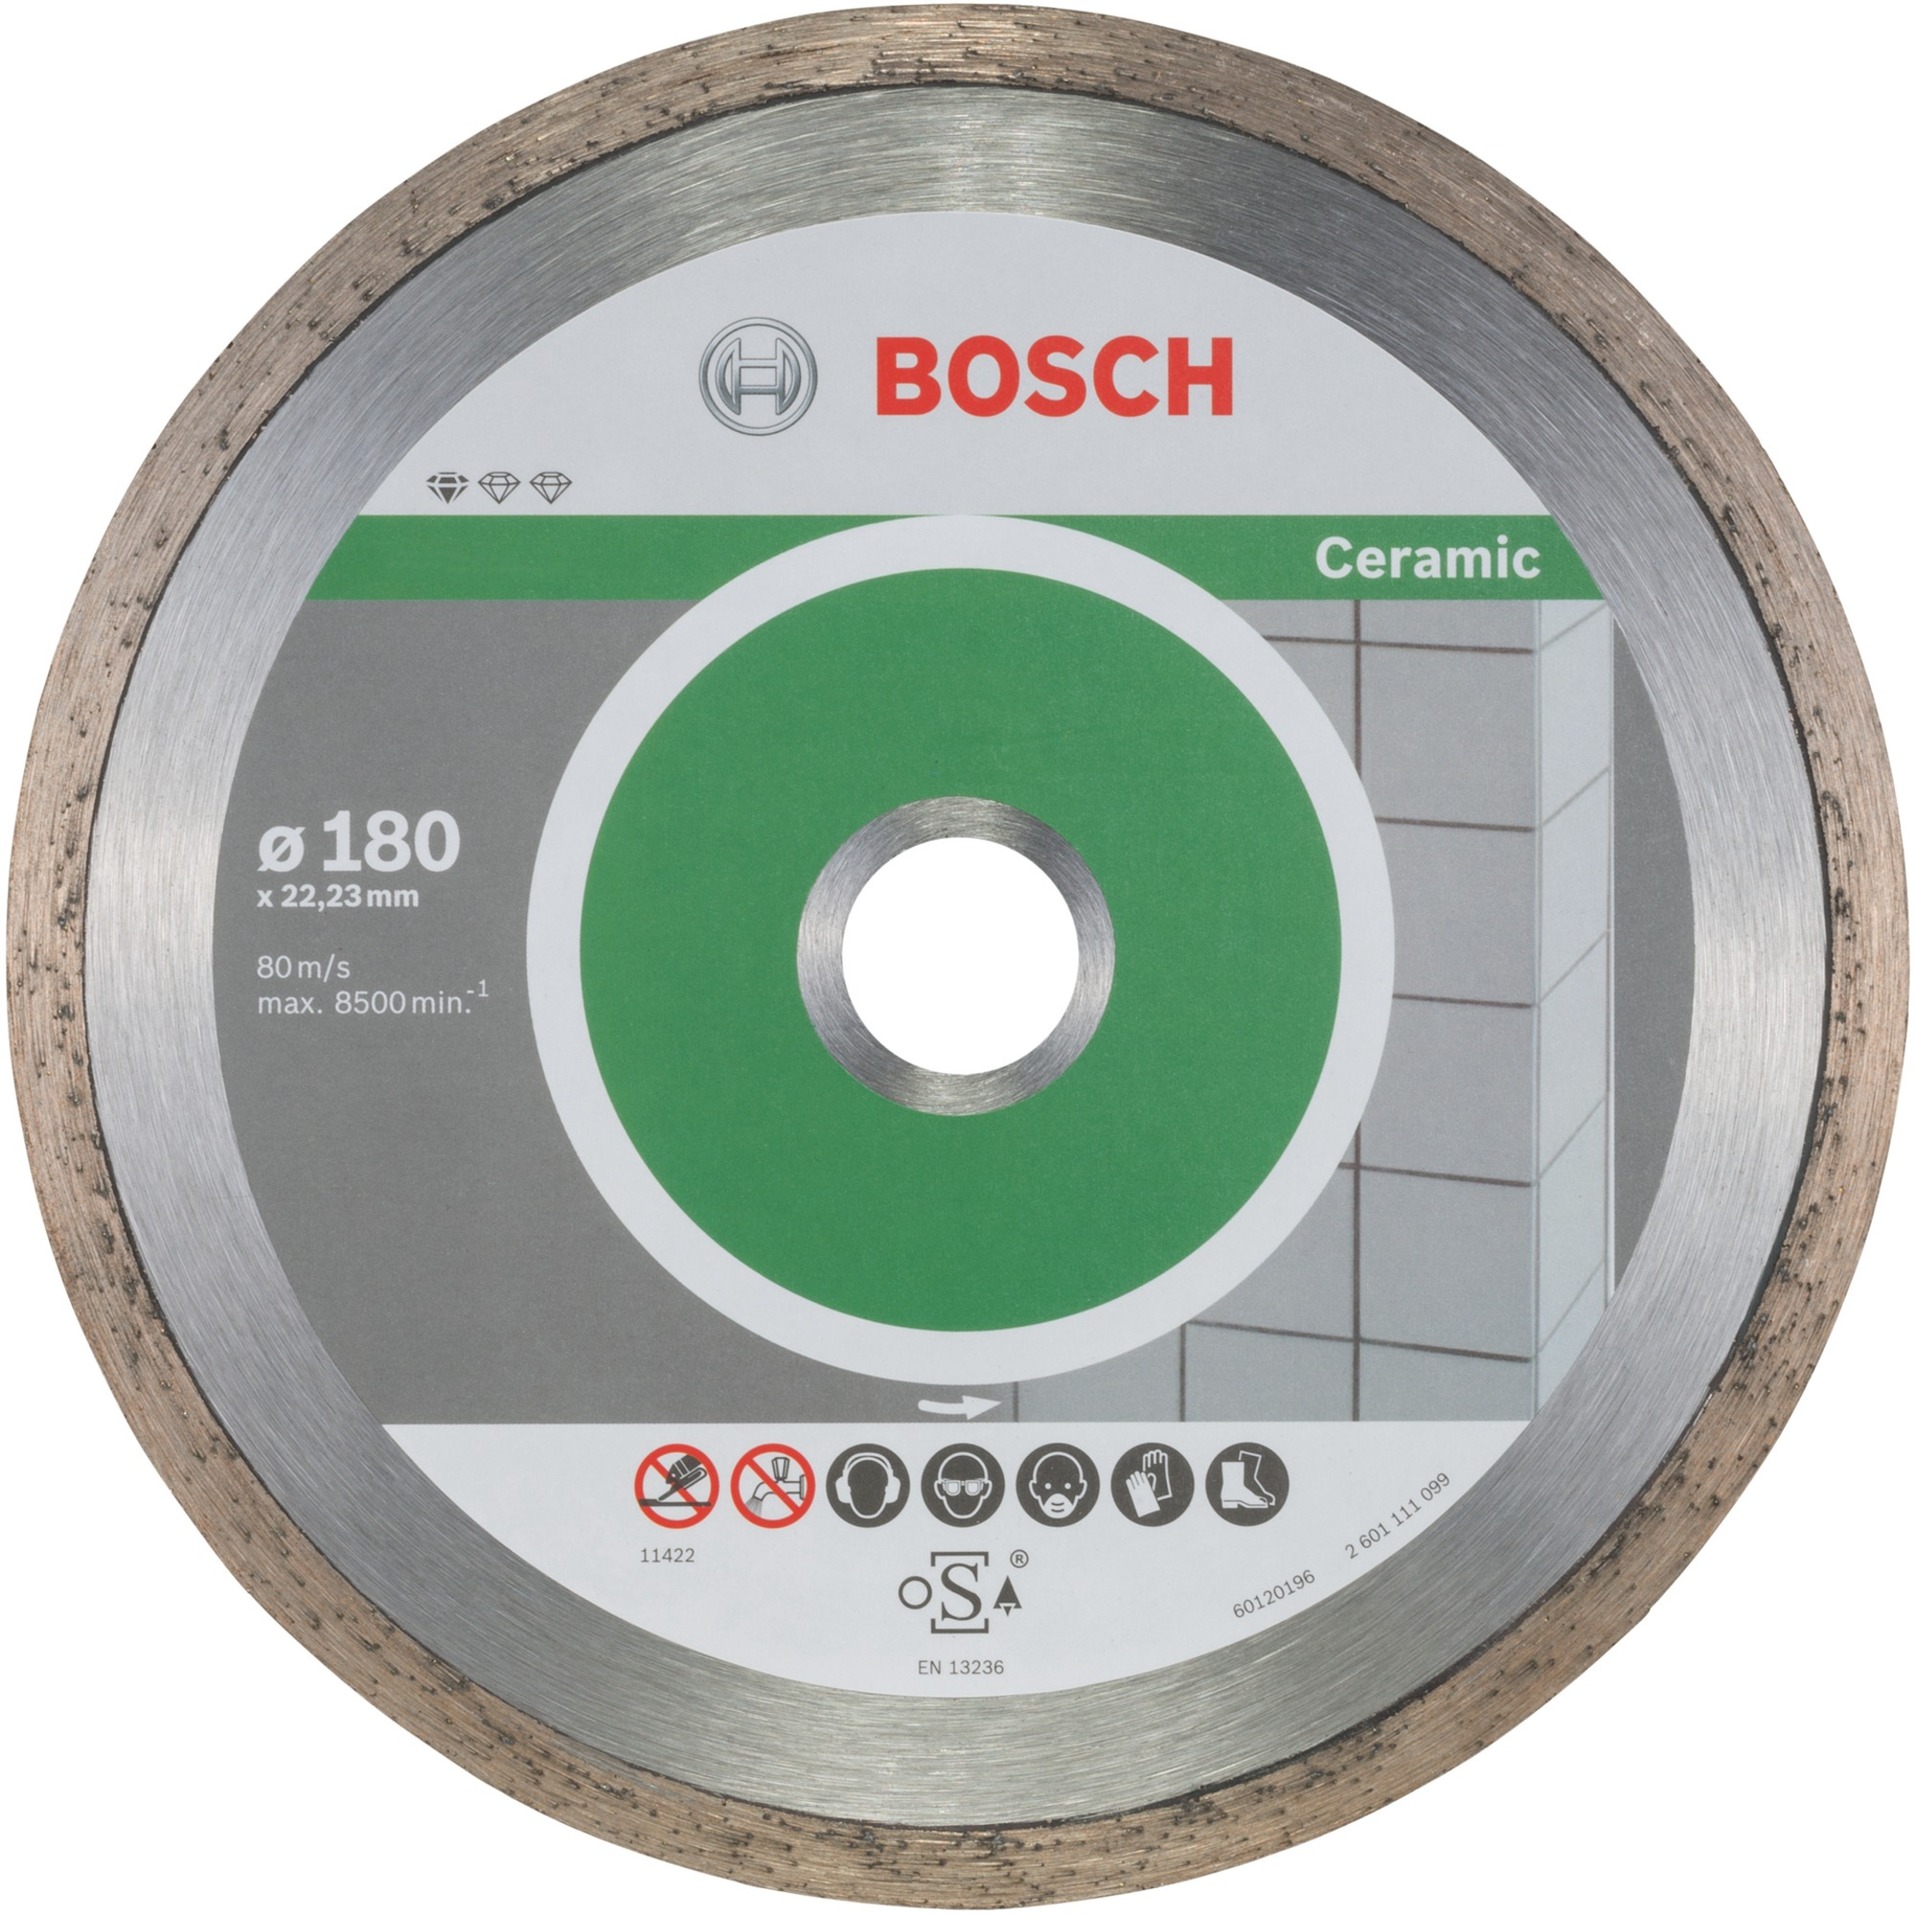 Diamanttrennscheibe Standard for Ceramic, Ø 180mm von Bosch